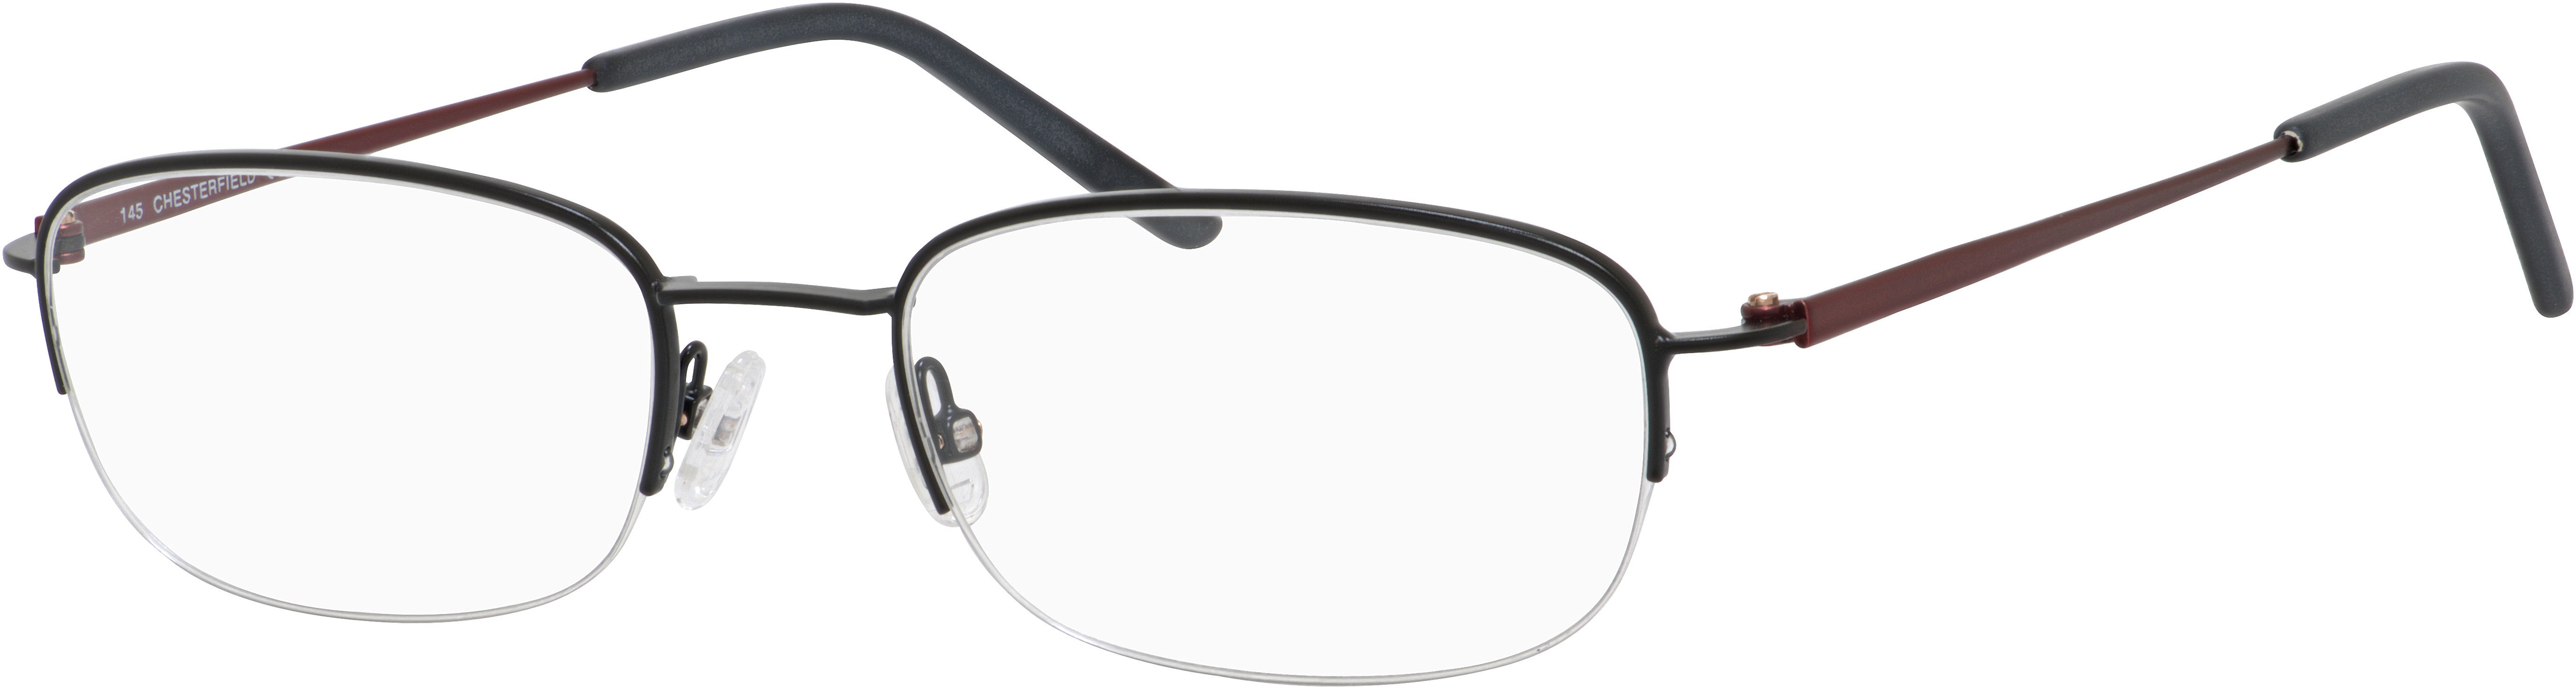  Chesterfield 877 Rectangular Eyeglasses 0003-0003  Black Matte (00 Demo Lens)